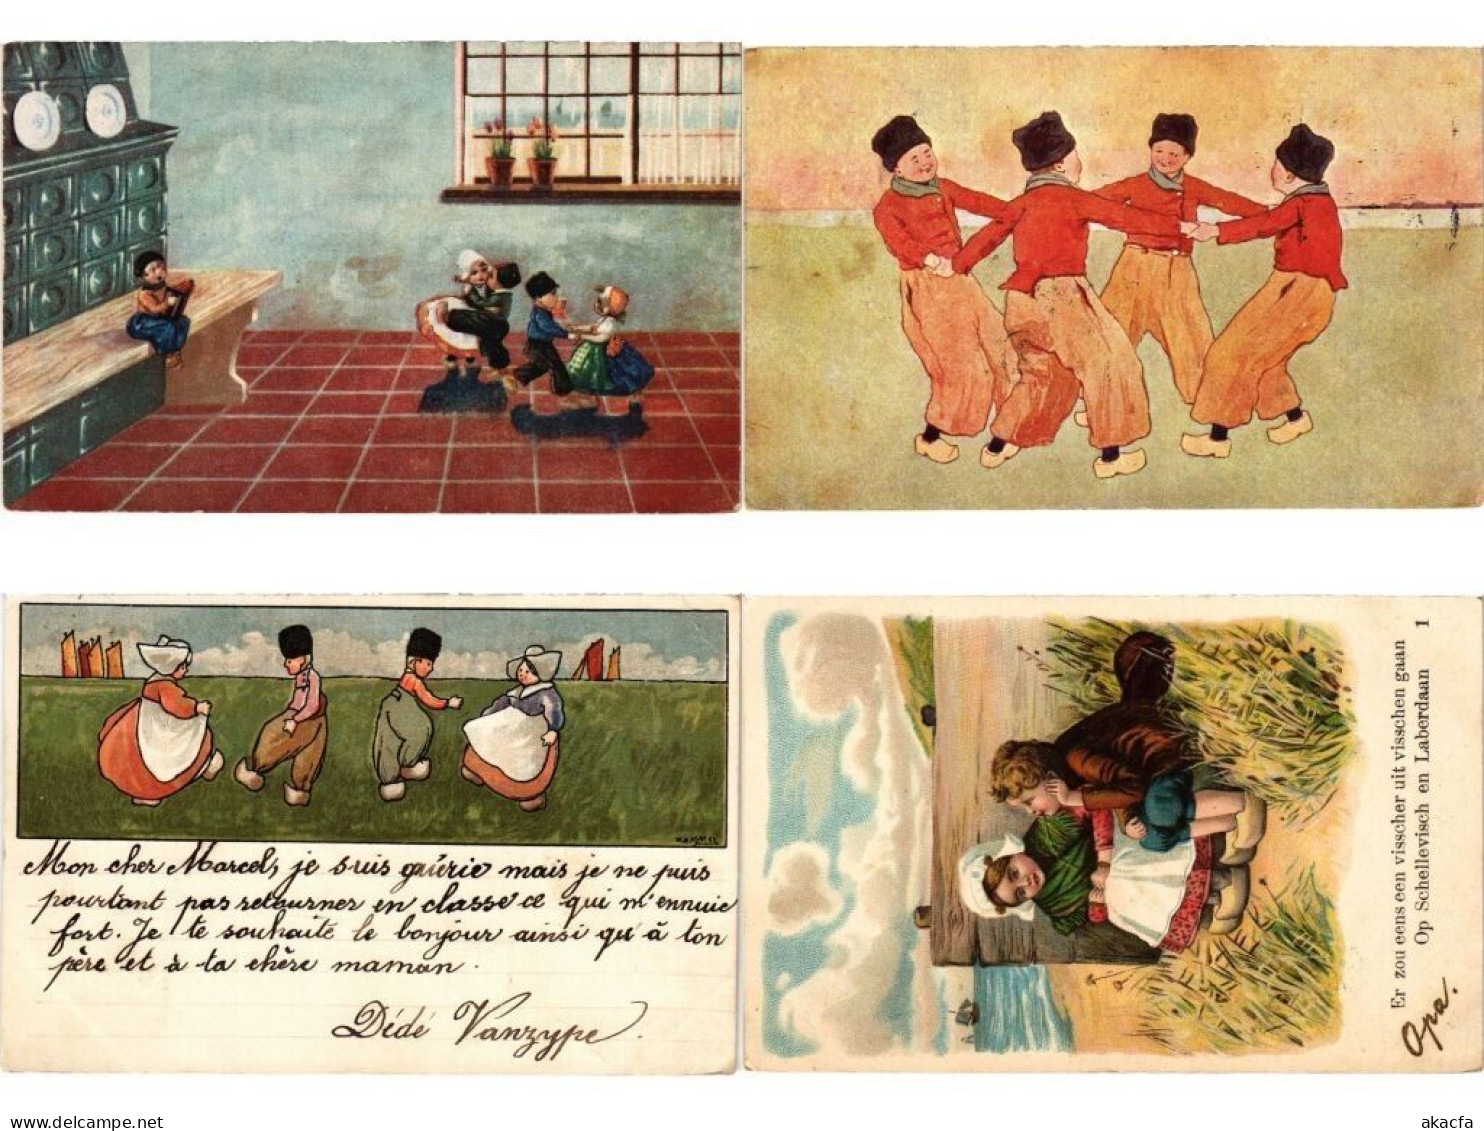 DUTCH FOLKLORE, 73 Mostly Artist Signed Vintage Postcards pre-1940 (L6210)